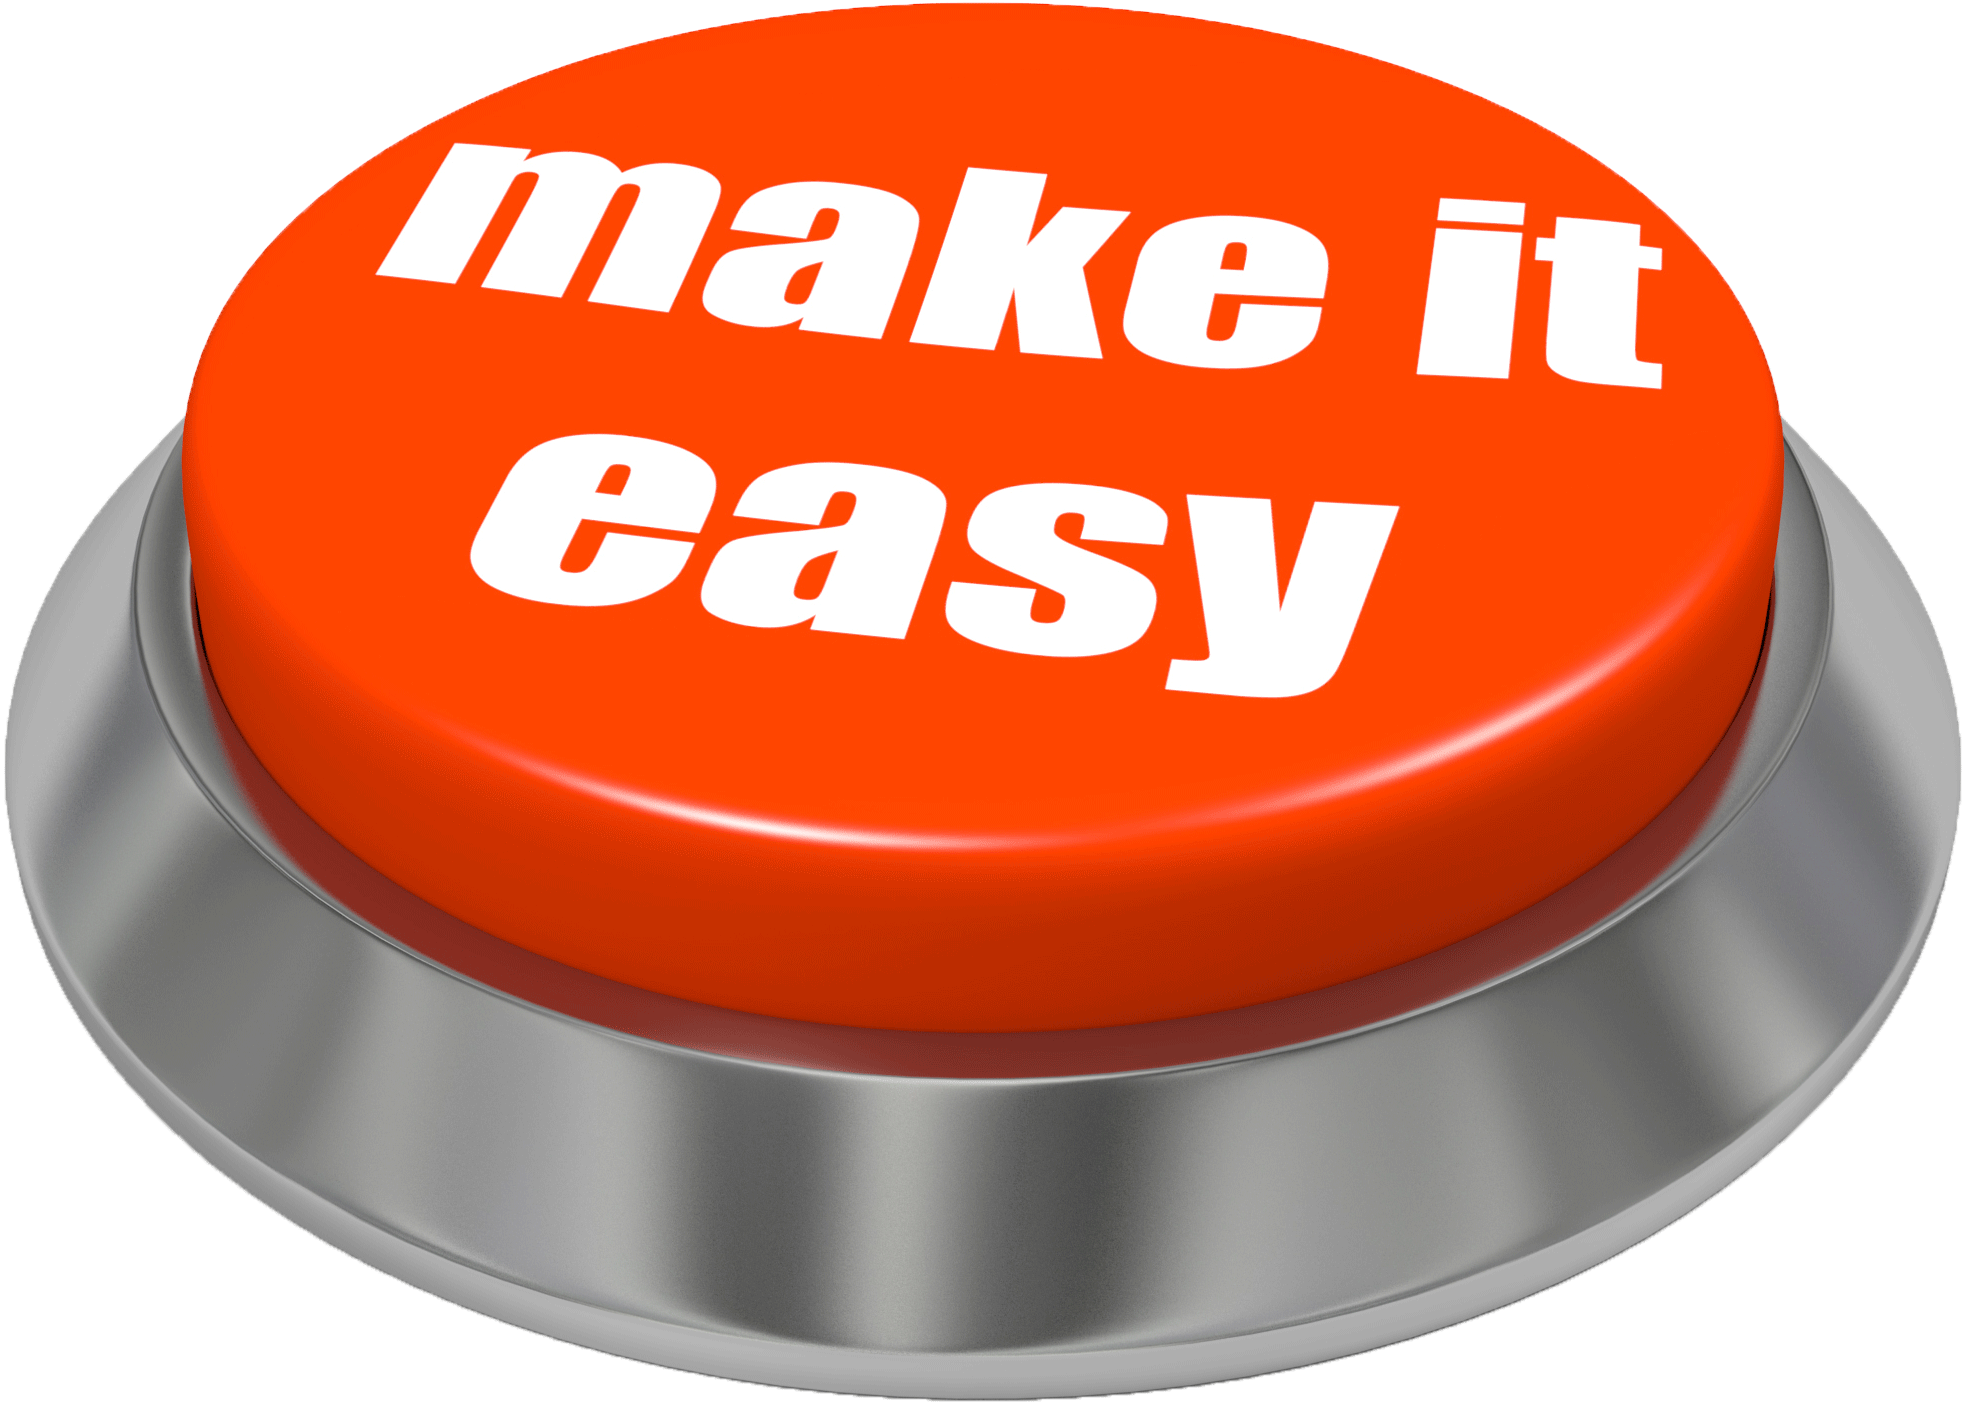 Make it easy 1. Make it easy. Кнопка that was easy. Эффект нажатия кнопки. Нажатая кнопка Push.